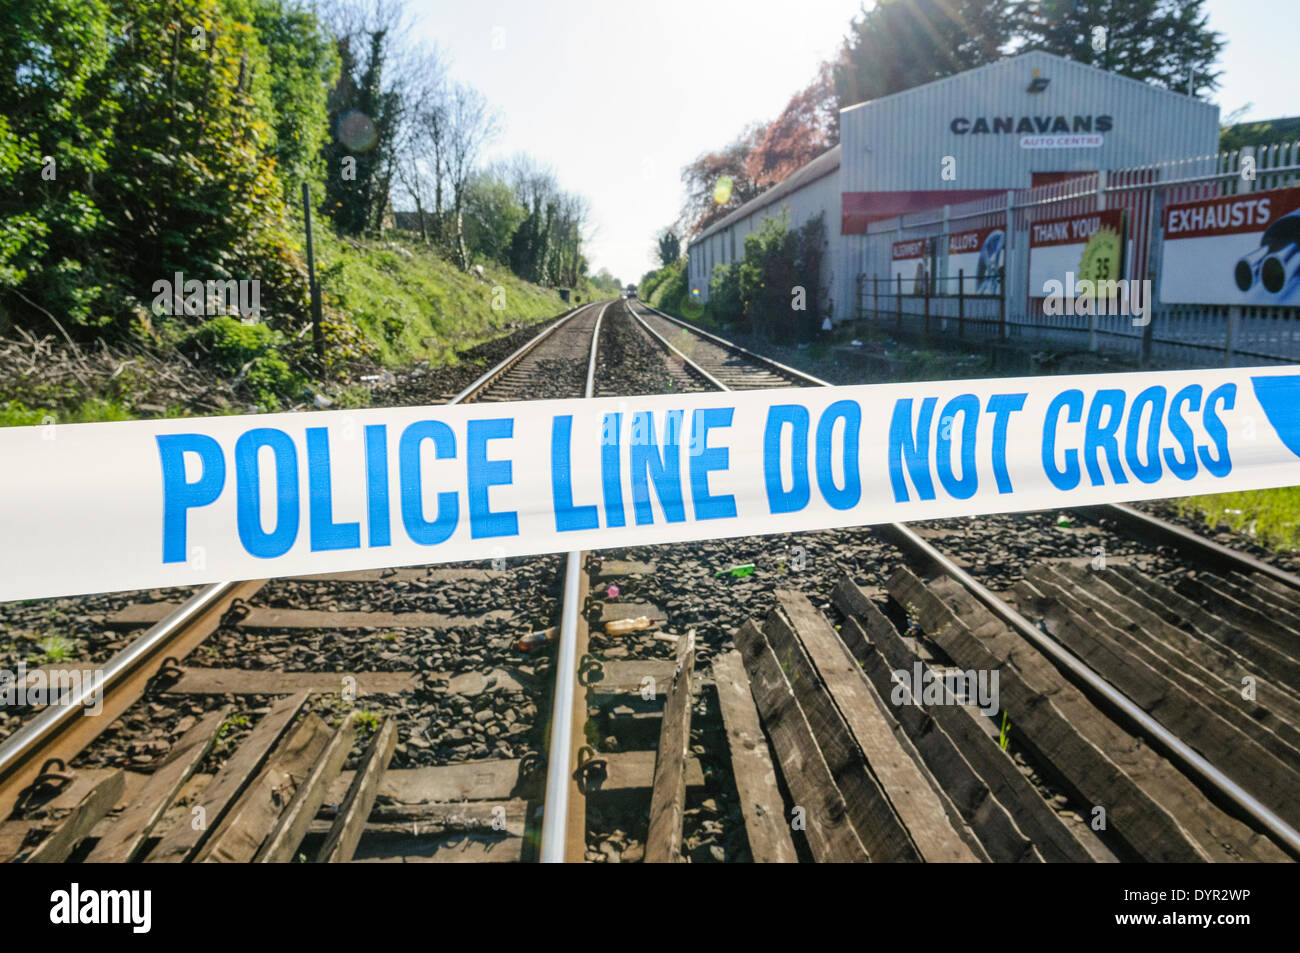 Lurgan, Irlande du Nord. 24 Apr 2014 - La Police tape ferme une voie de chemin de fer Crédit : Stephen Barnes/Alamy Live News Banque D'Images